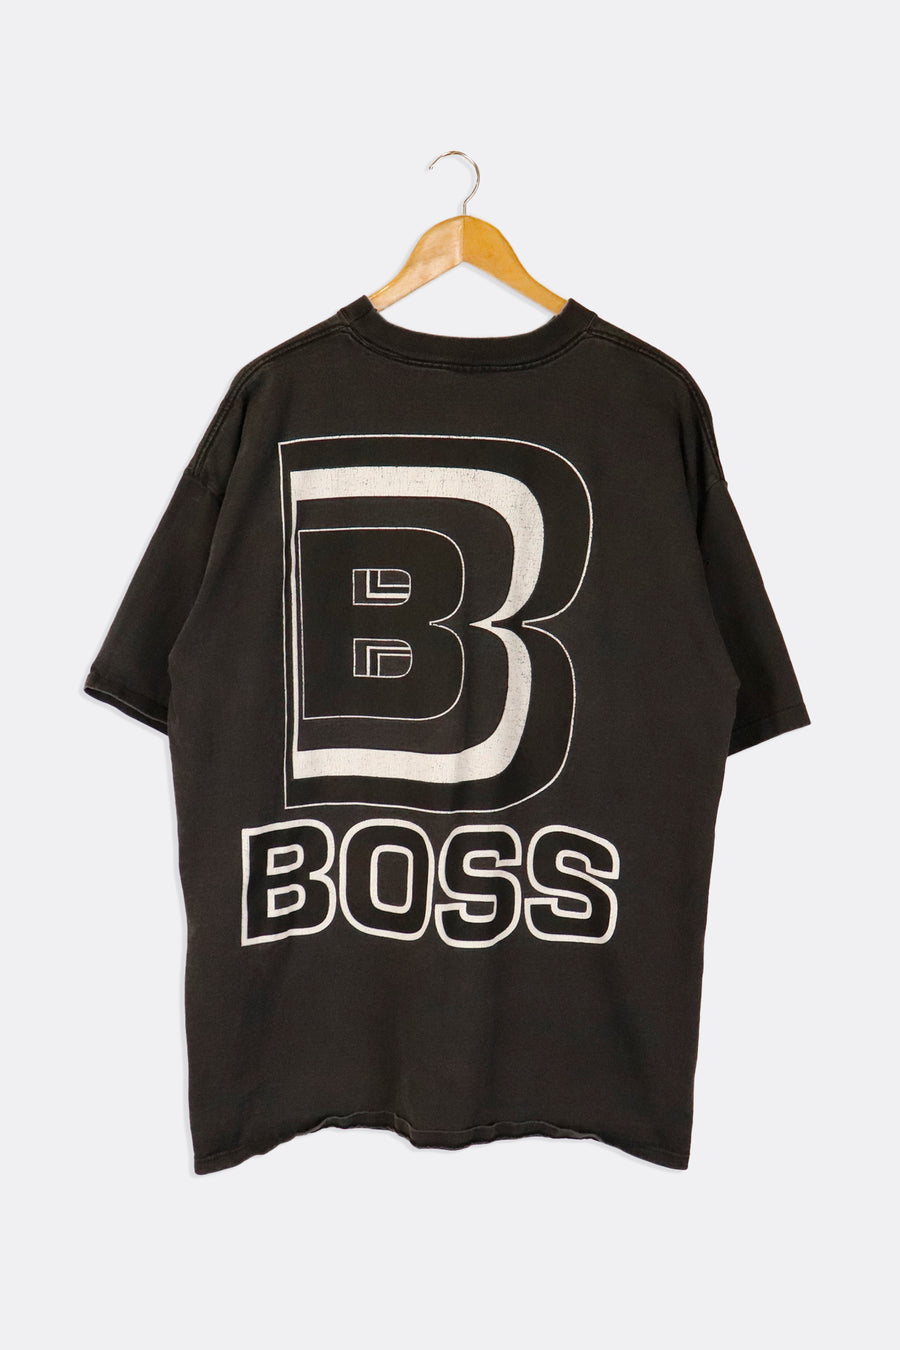 Vintage Boss B Block Letter T Shirt Sz XL